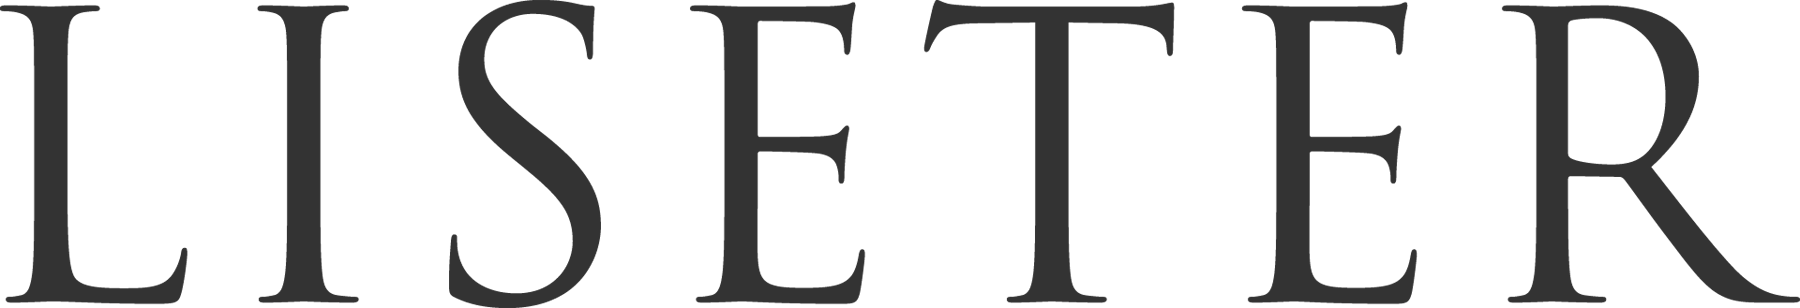 Liseter logo